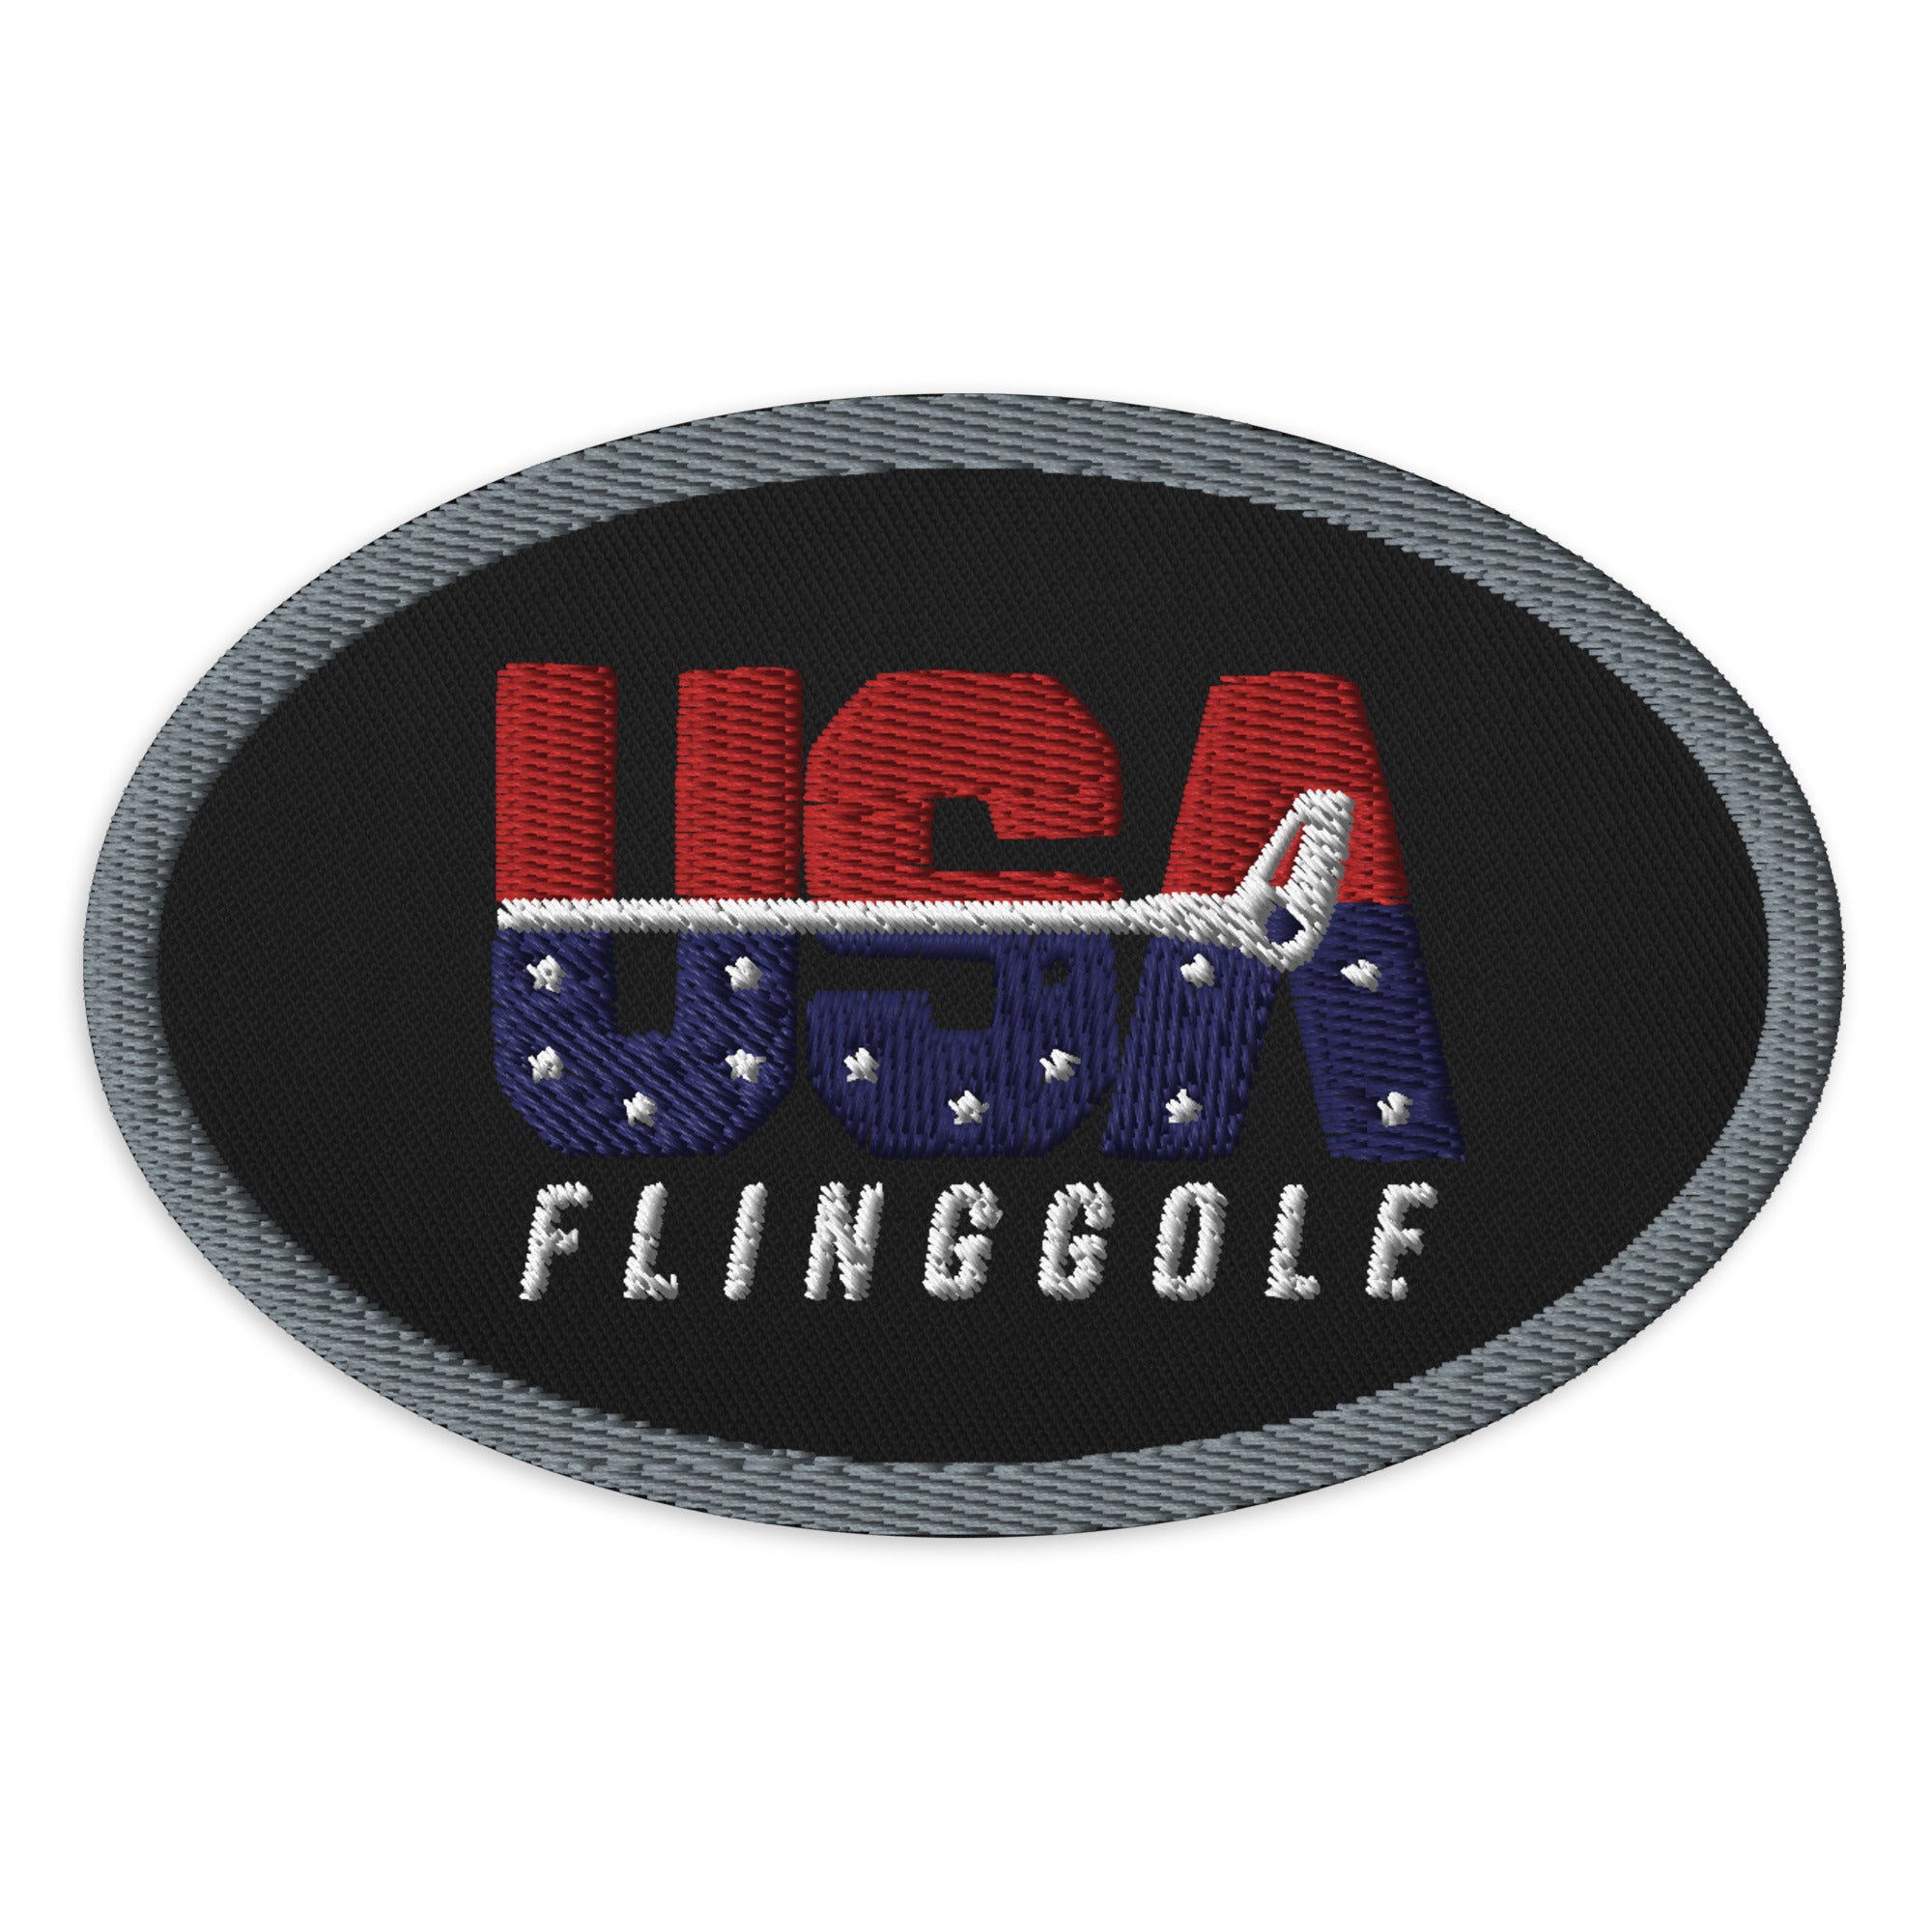 USA FlingGolf Oval Patch (Grey Border on Black)